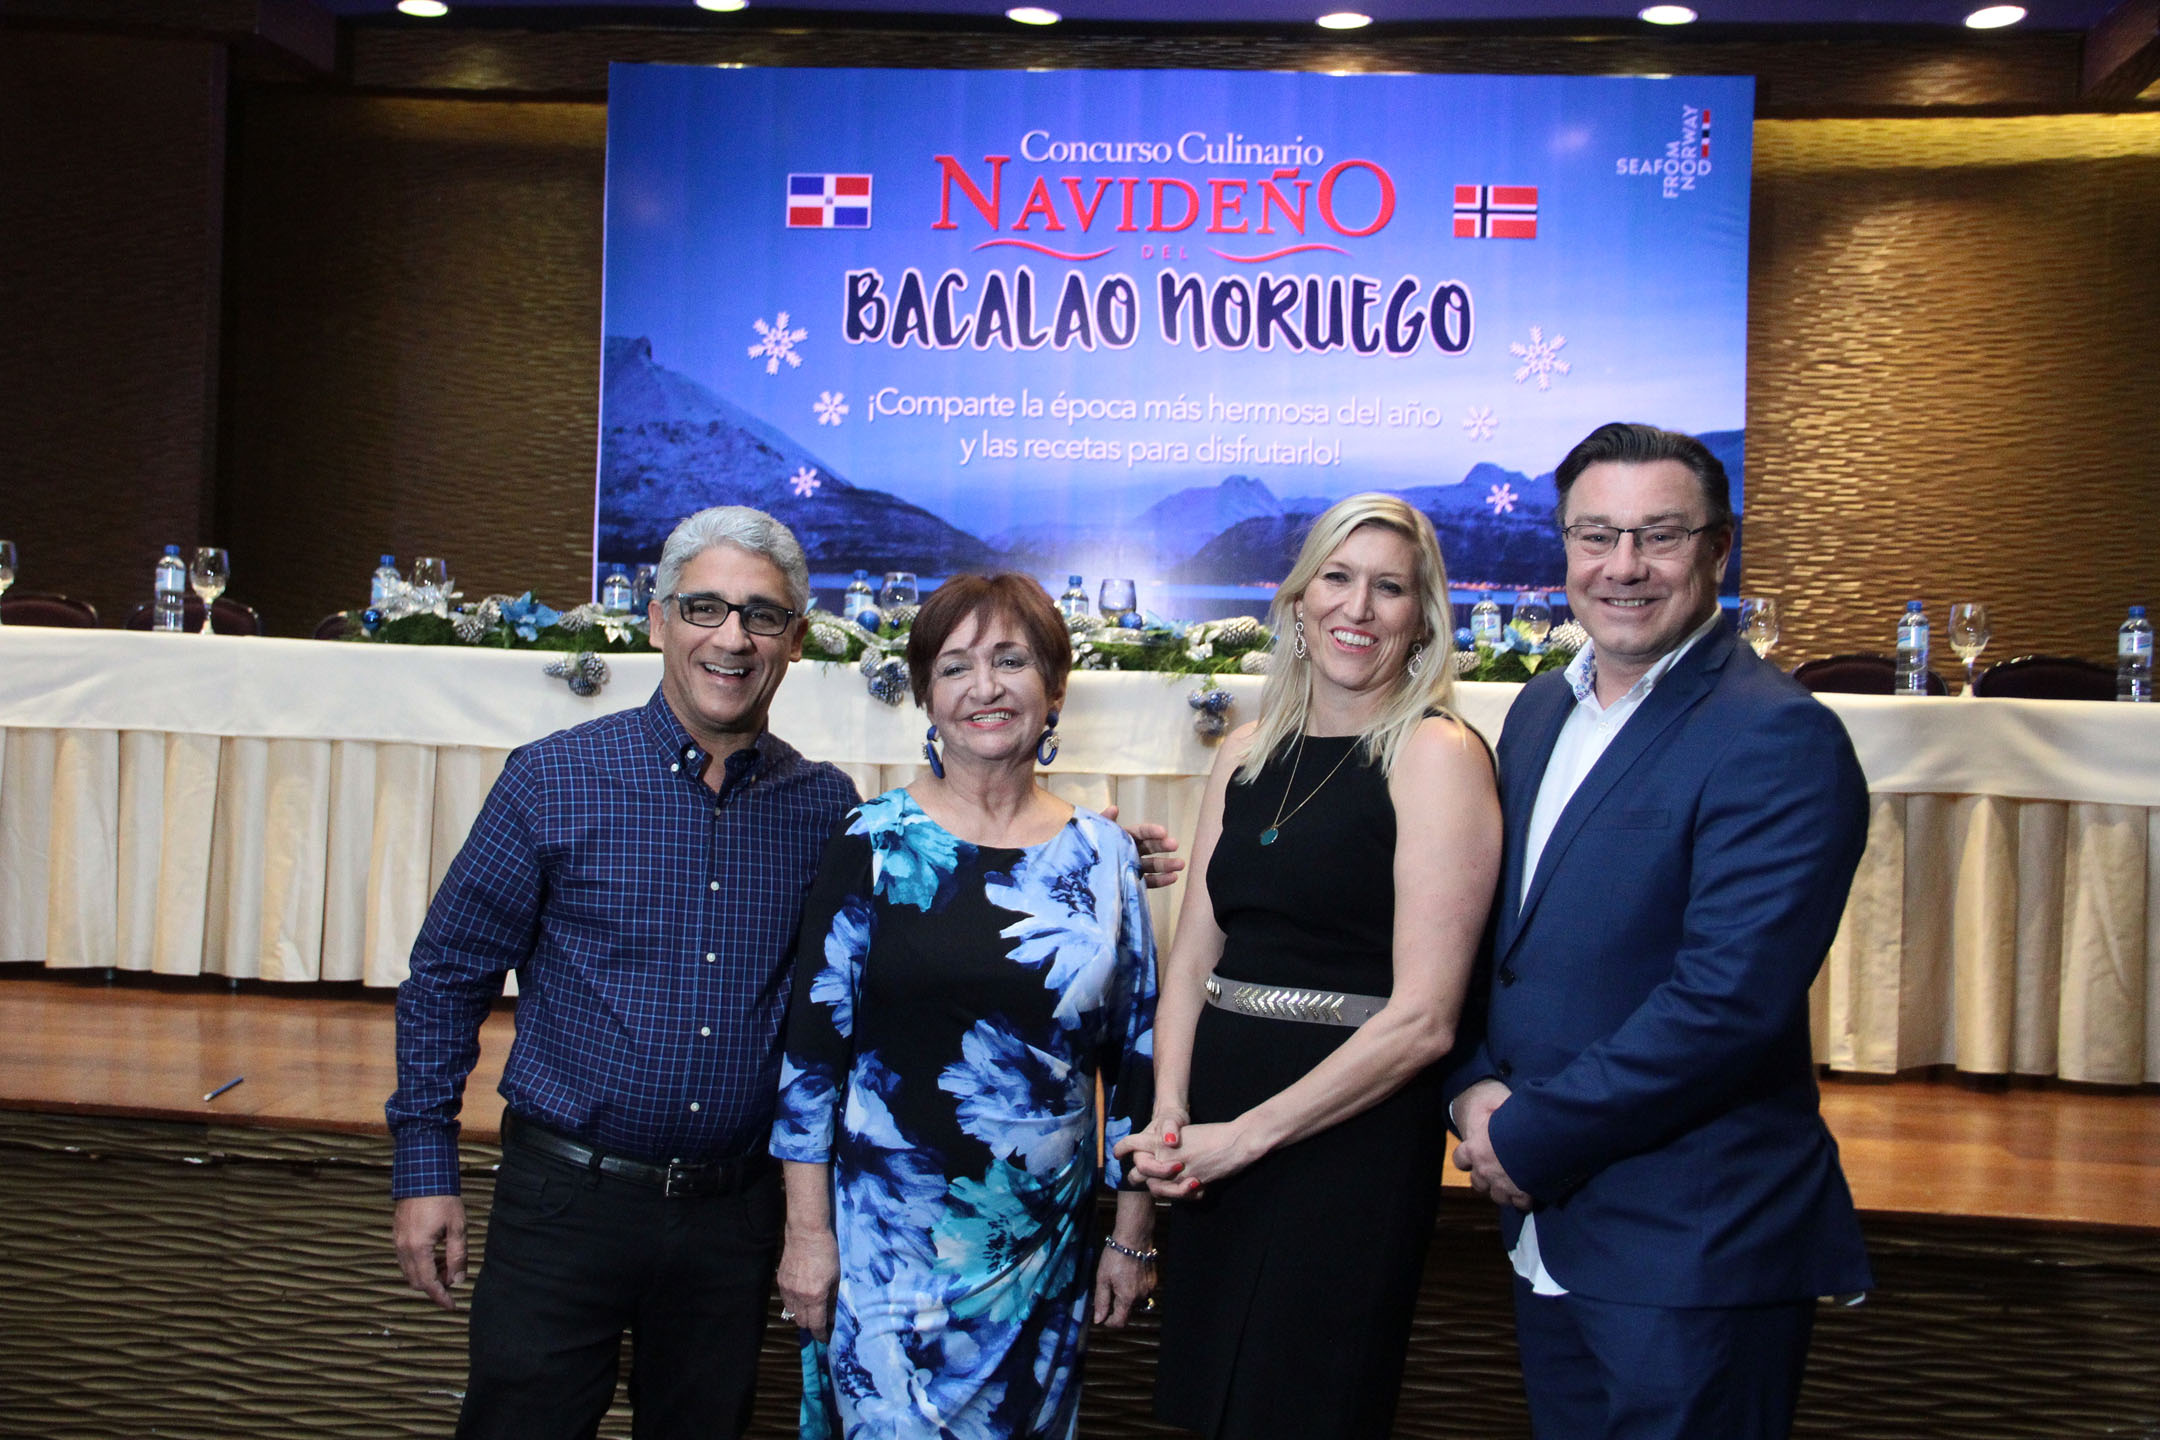  Bacalao Noruego Celebra Concurso Culinario Navideño